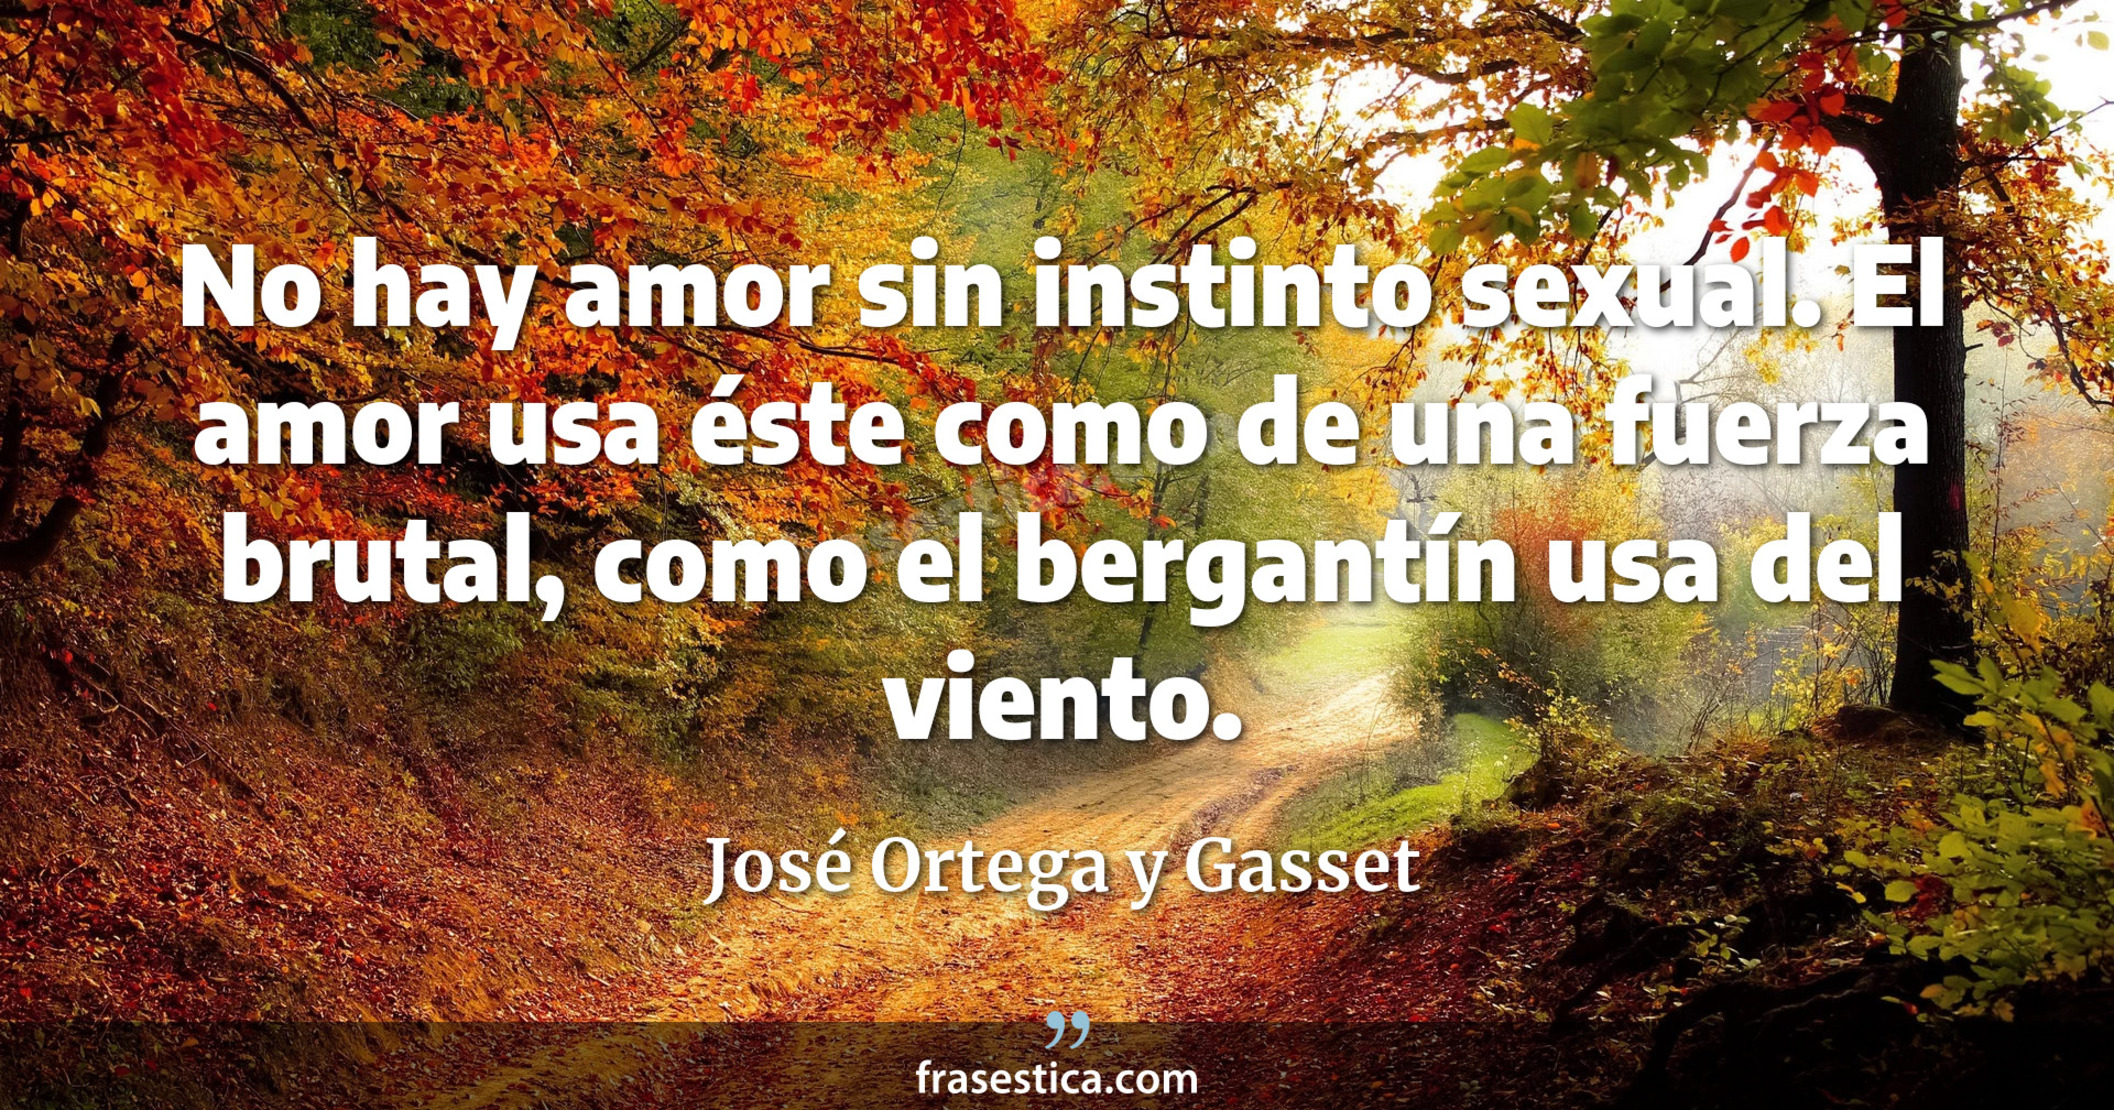 No hay amor sin instinto sexual. El amor usa éste como de una fuerza brutal, como el bergantín usa del viento. - José Ortega y Gasset